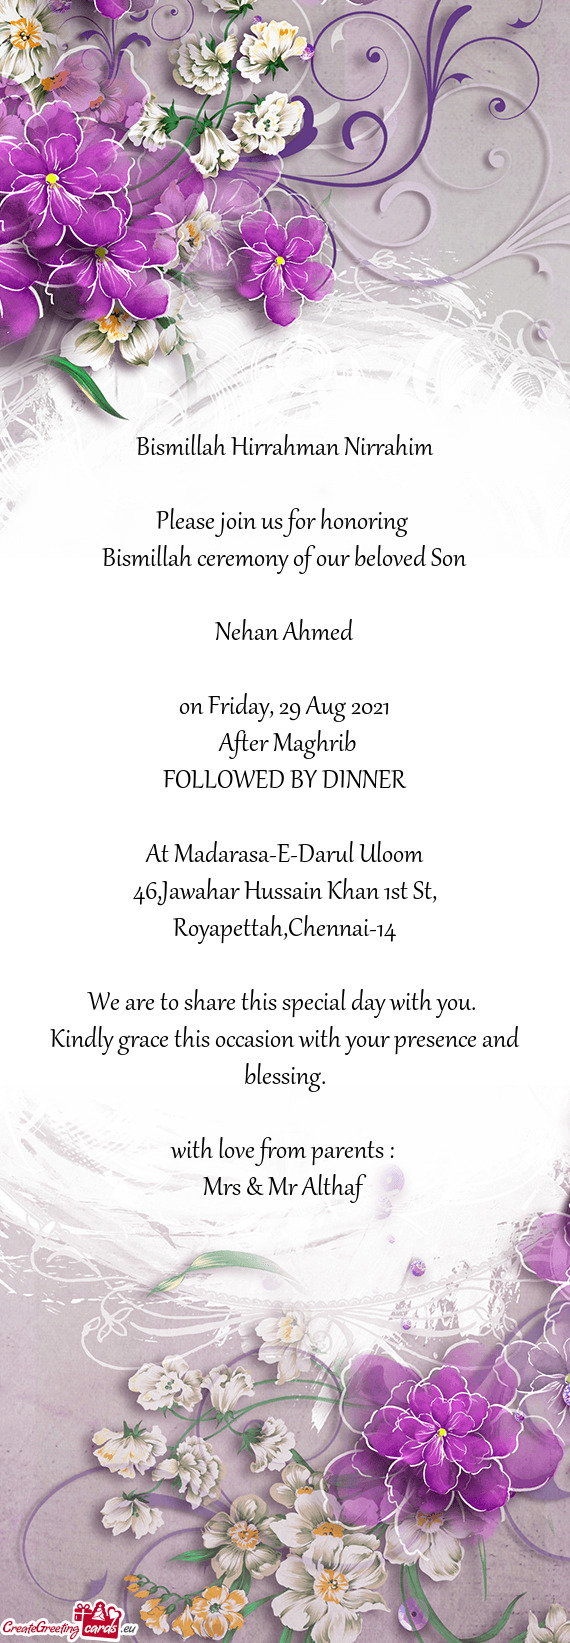 Bismillah ceremony of our beloved Son